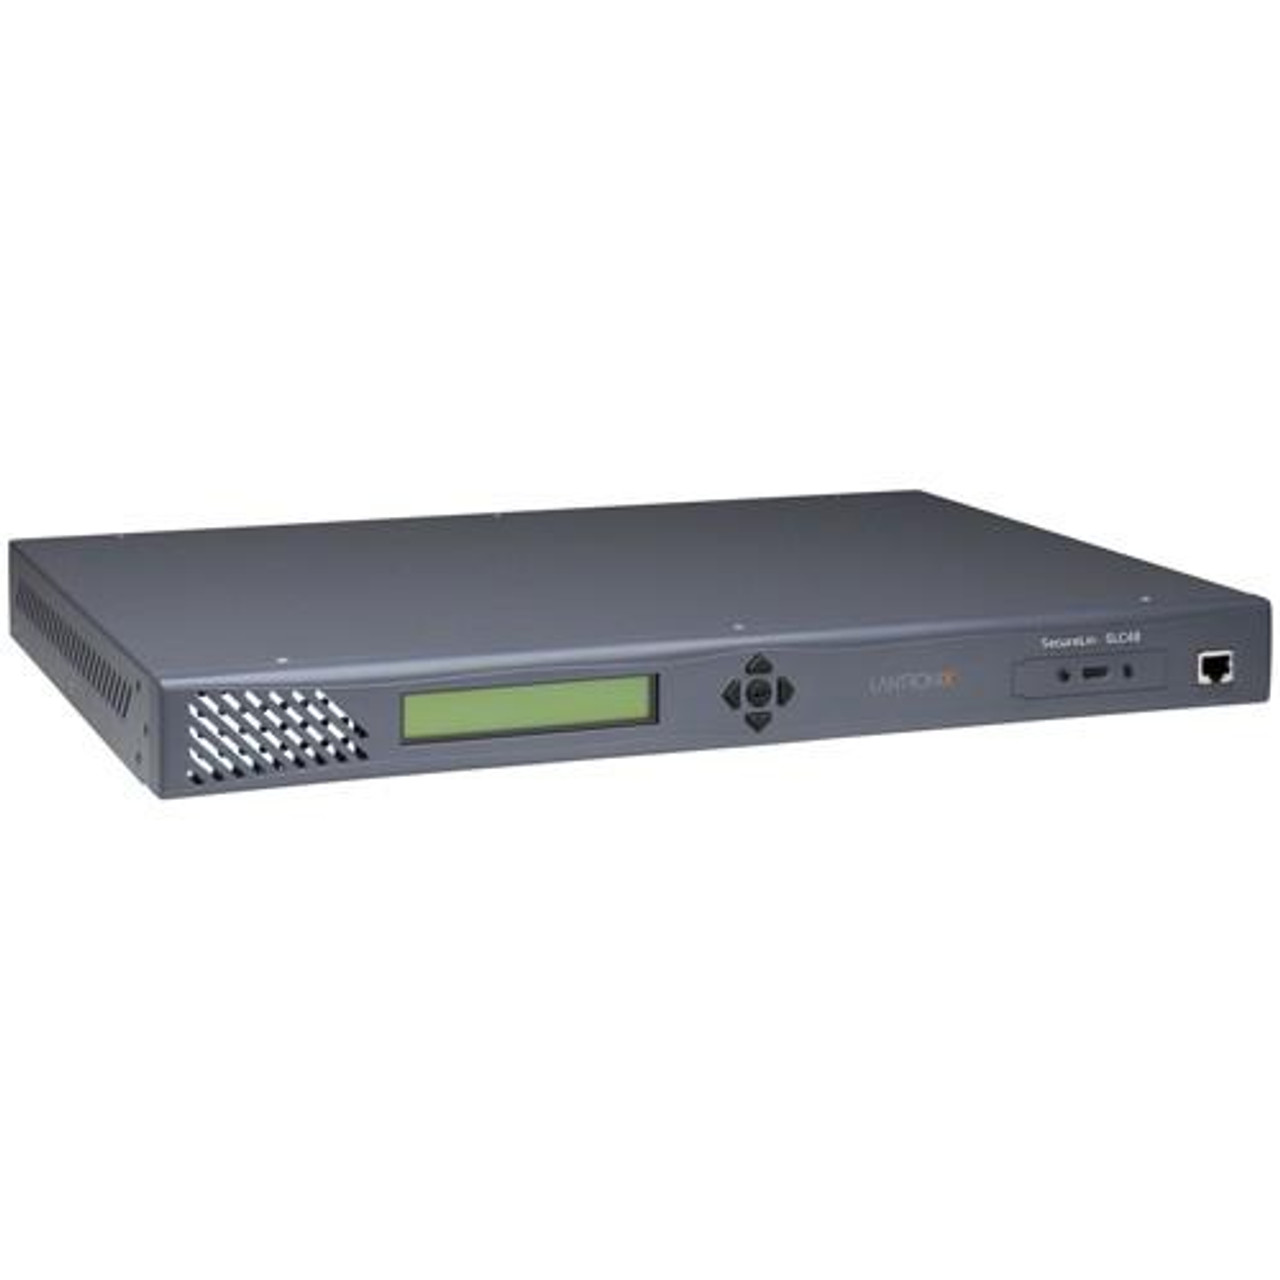 SLC04822N-G3 Lantronix SecureLinx SLC48 Console Server 48 x RJ-45 Serial, 2 x RJ-45 10/100Base-TX Network 2 x PC Card